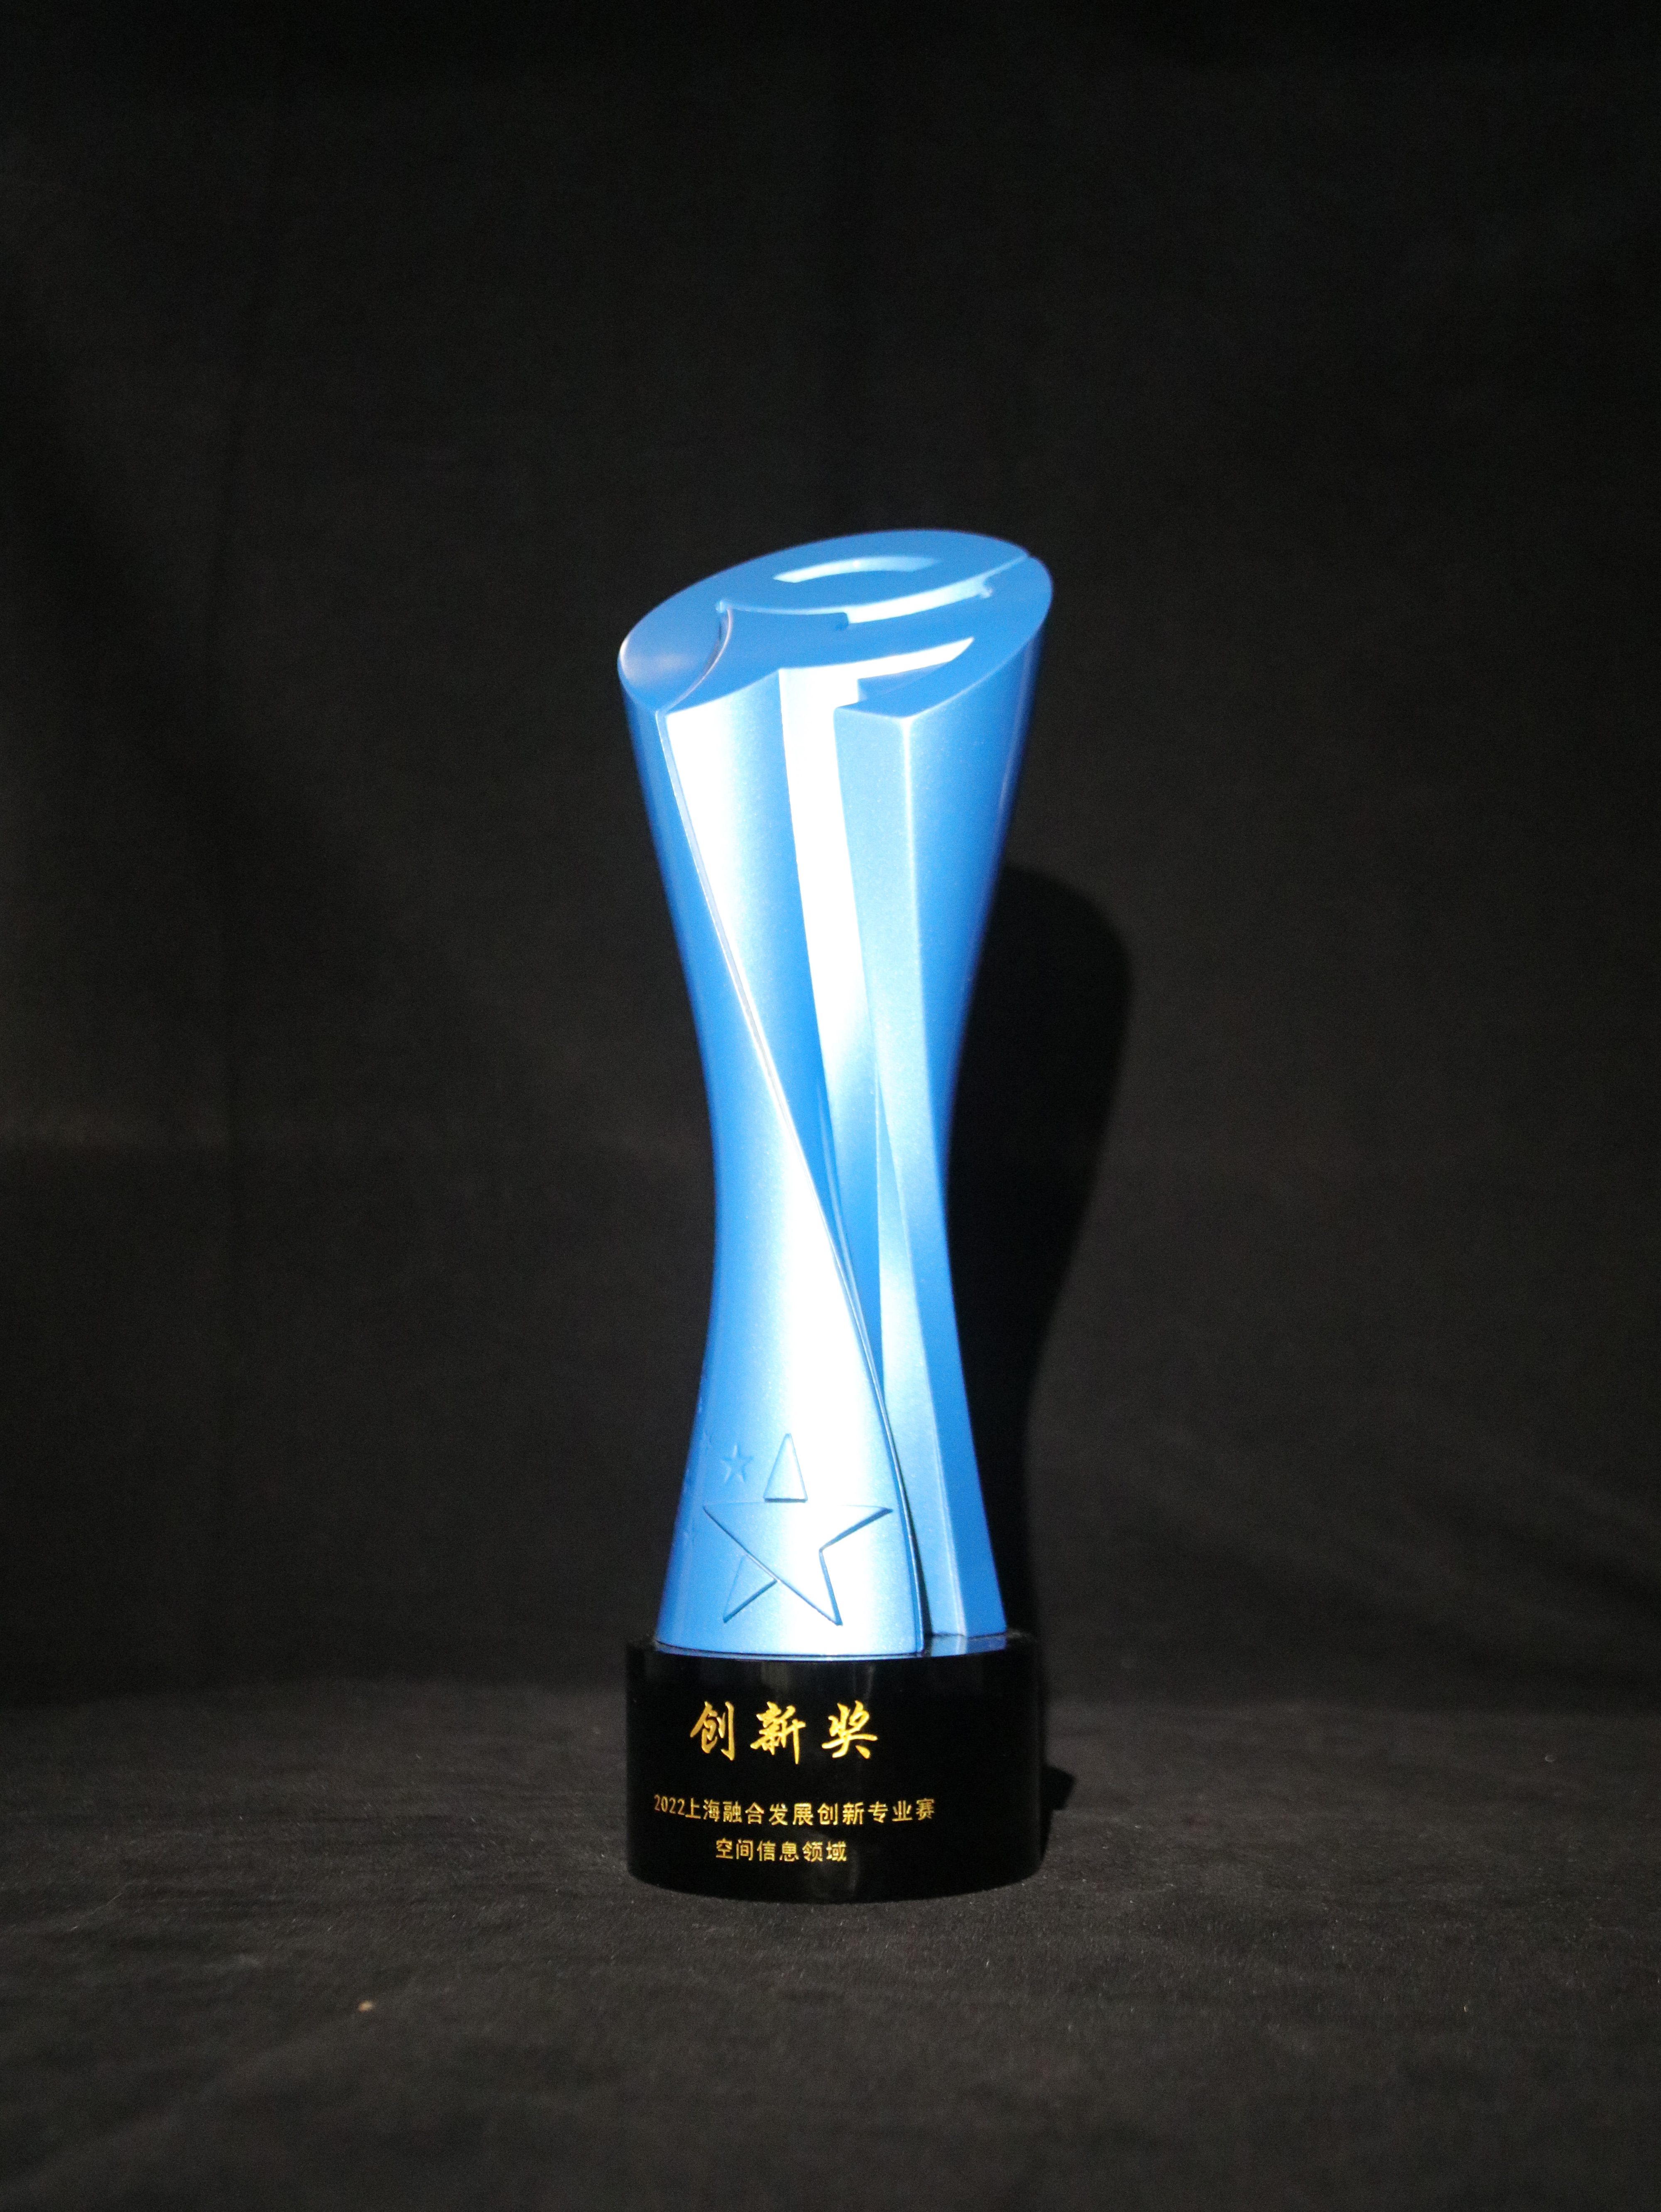 上海融合发展创新专业赛空间信息领域创新奖